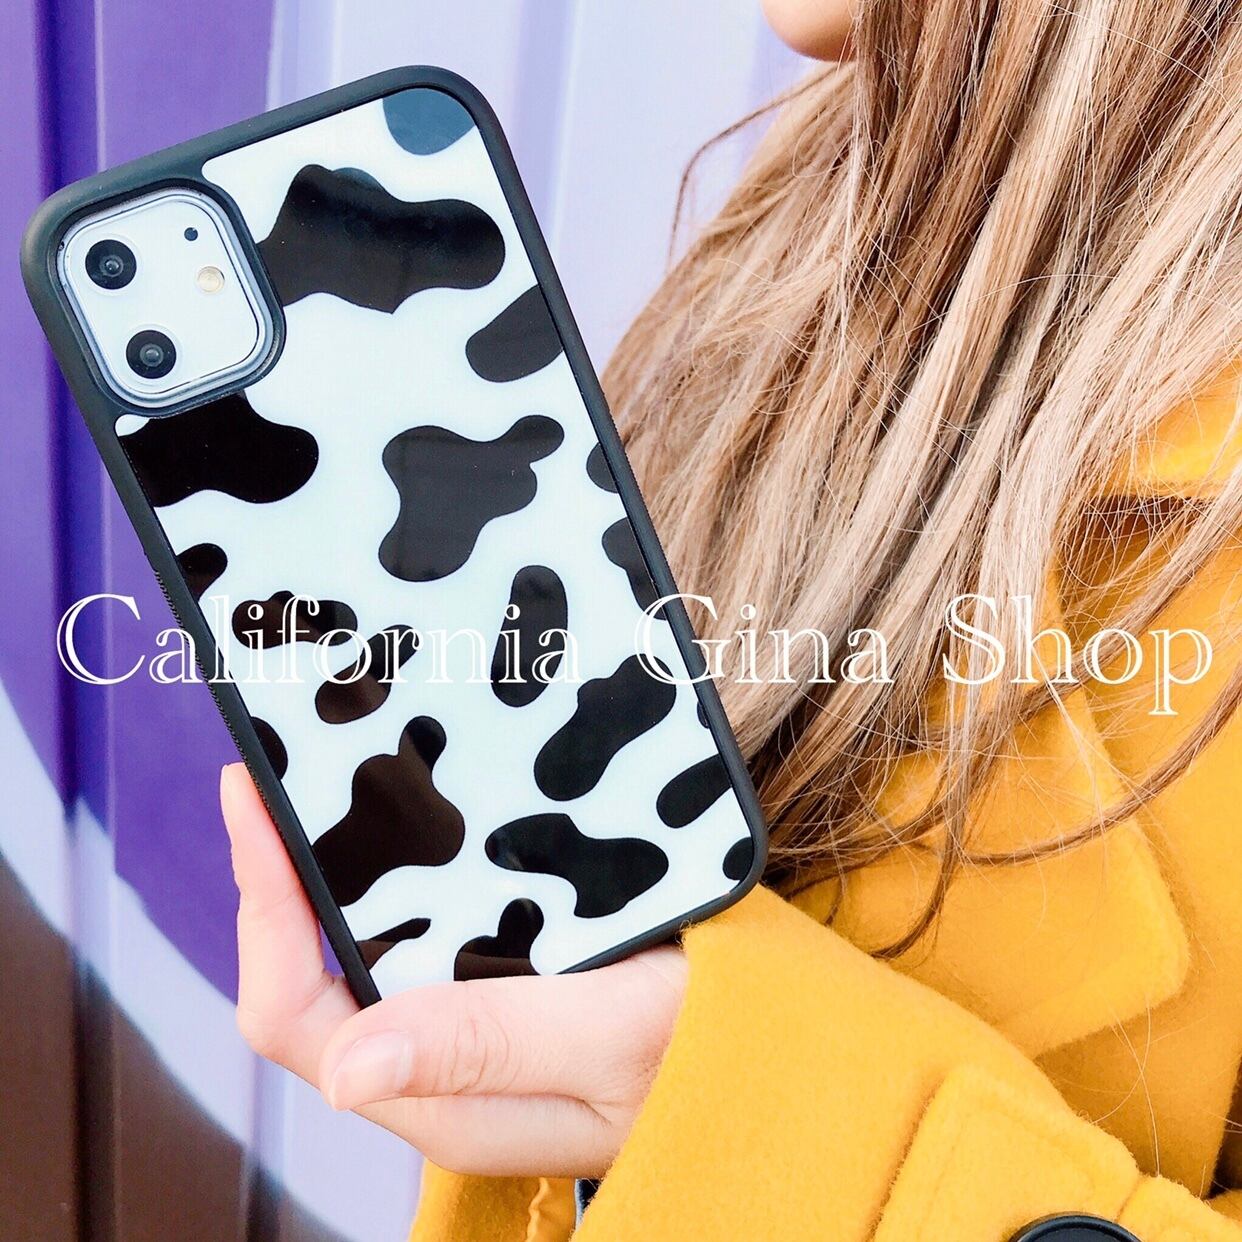 大特価sale 即納 アニマル柄 Iphoneケース ダルメシアン柄 牛柄 Iphone12シリーズ対応 Gina California Shop